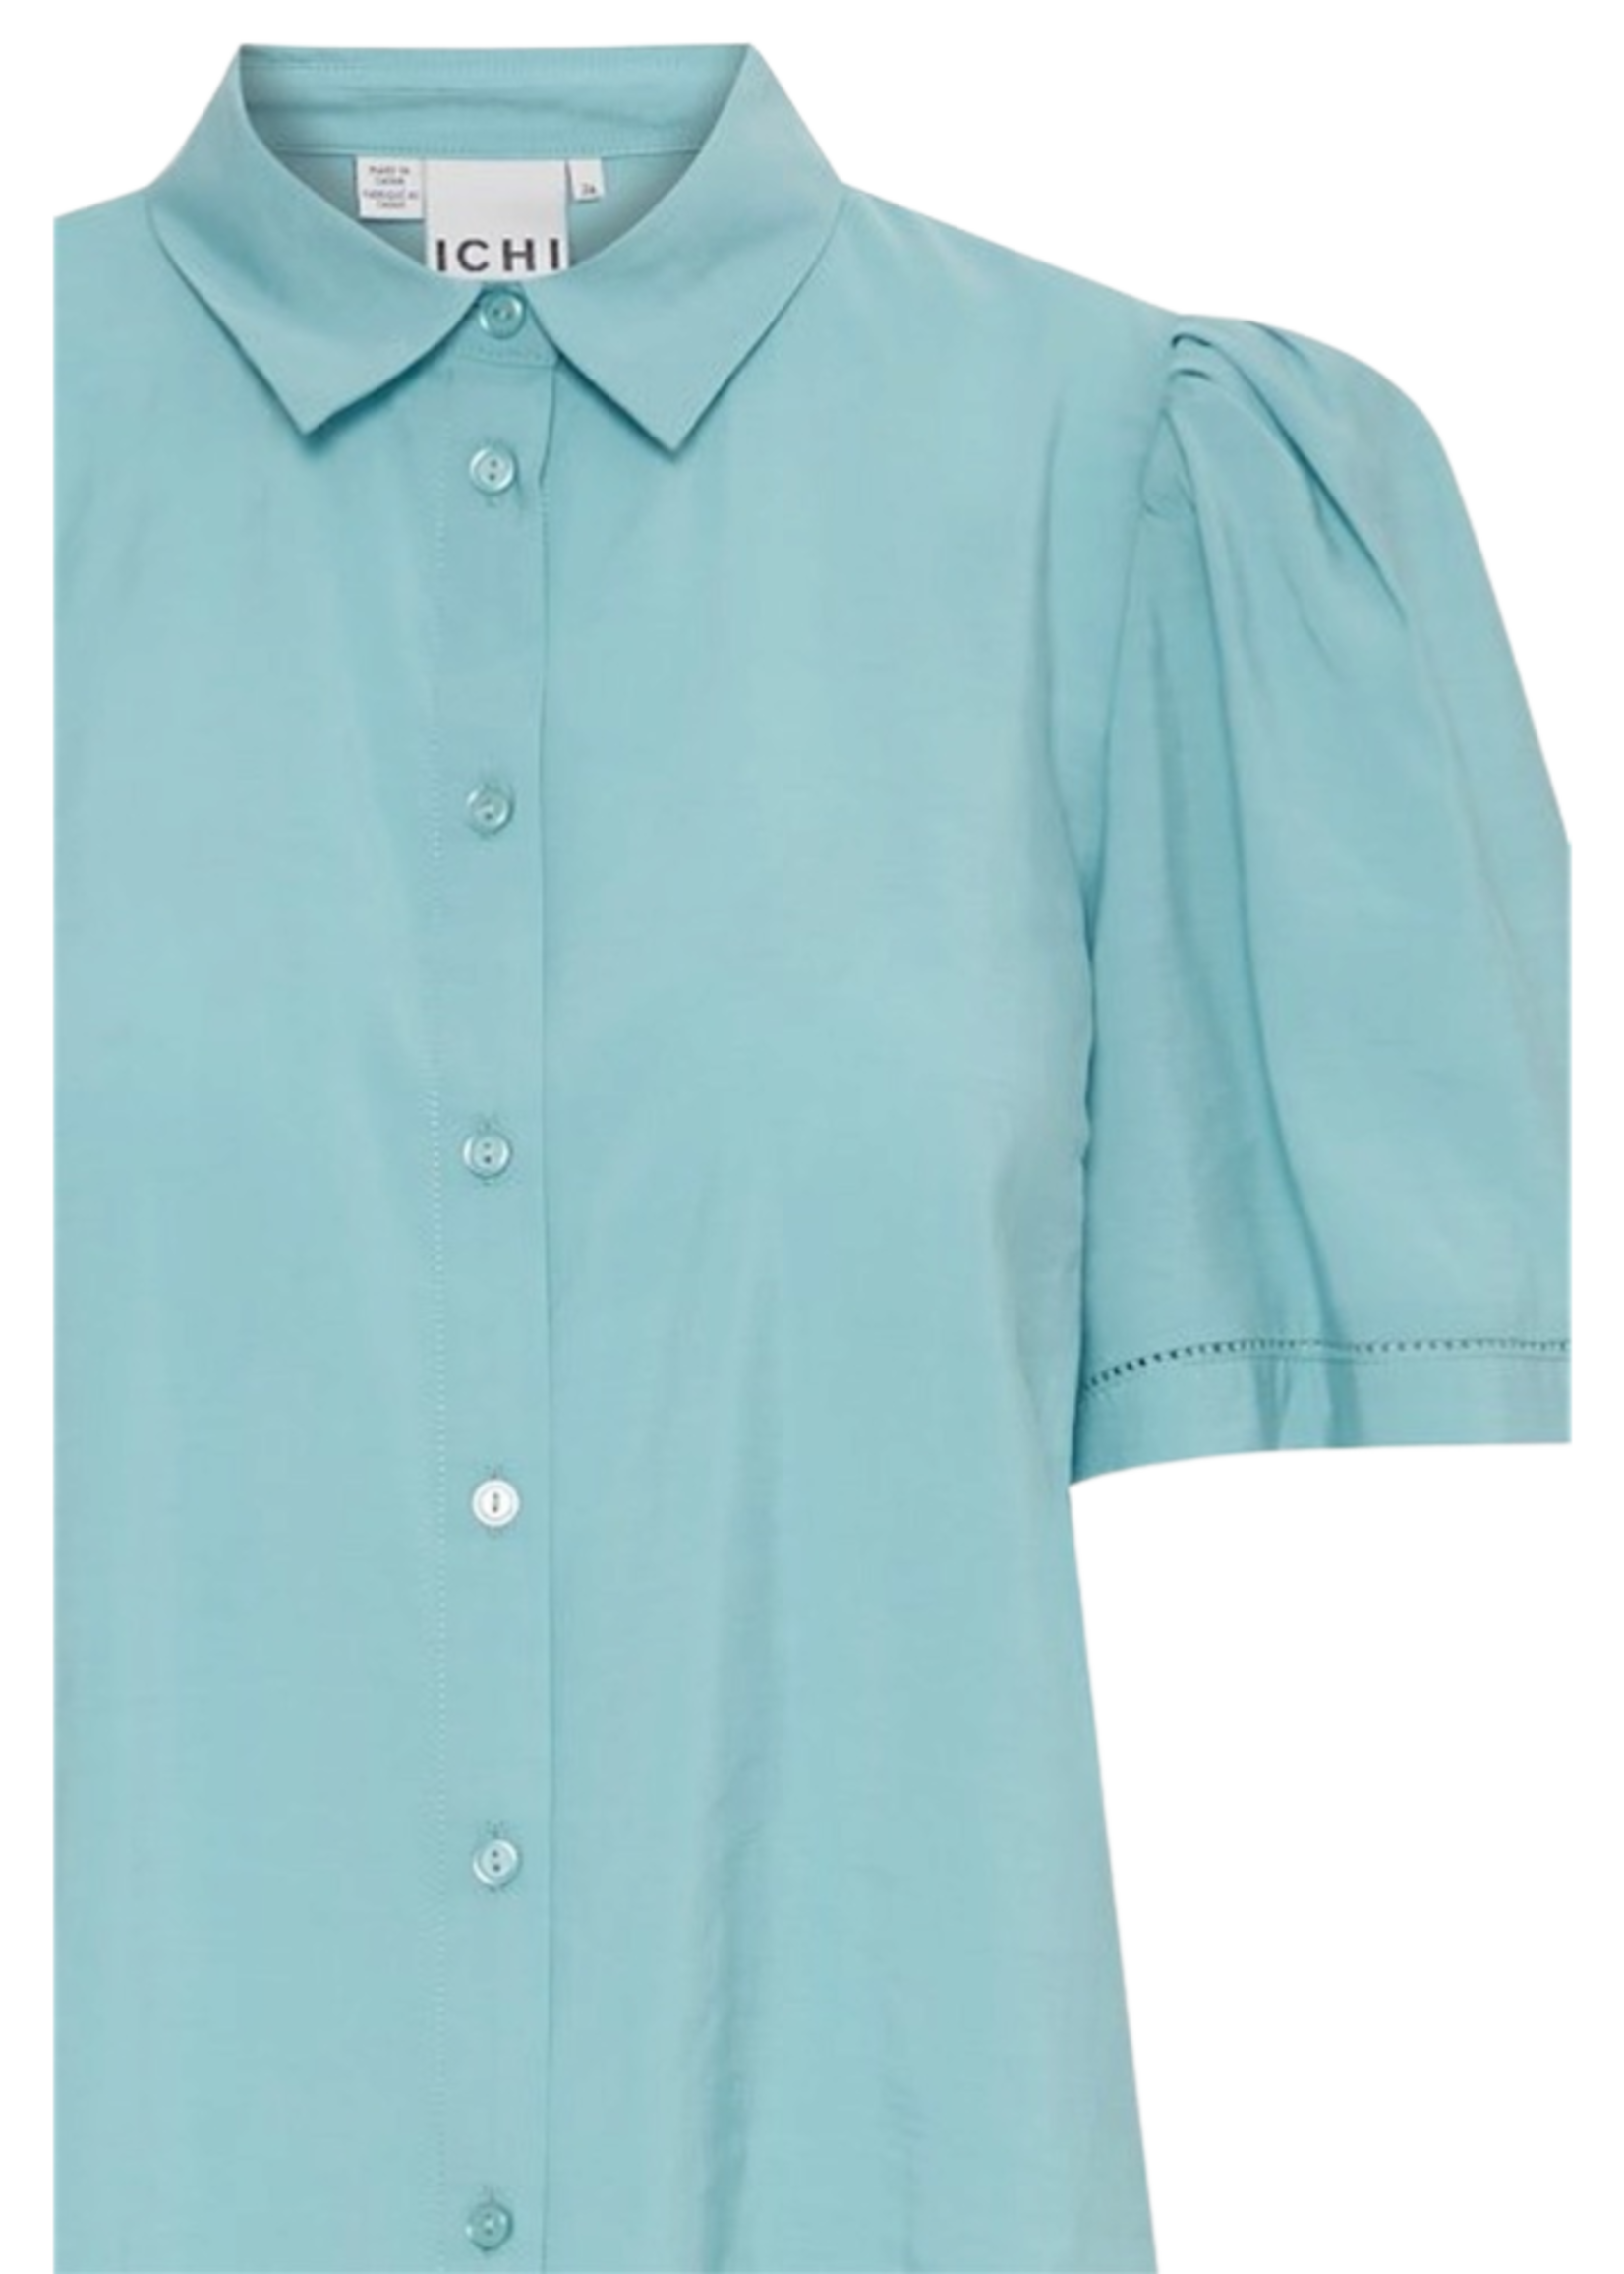 ICHI Ihcinoma blouse blue